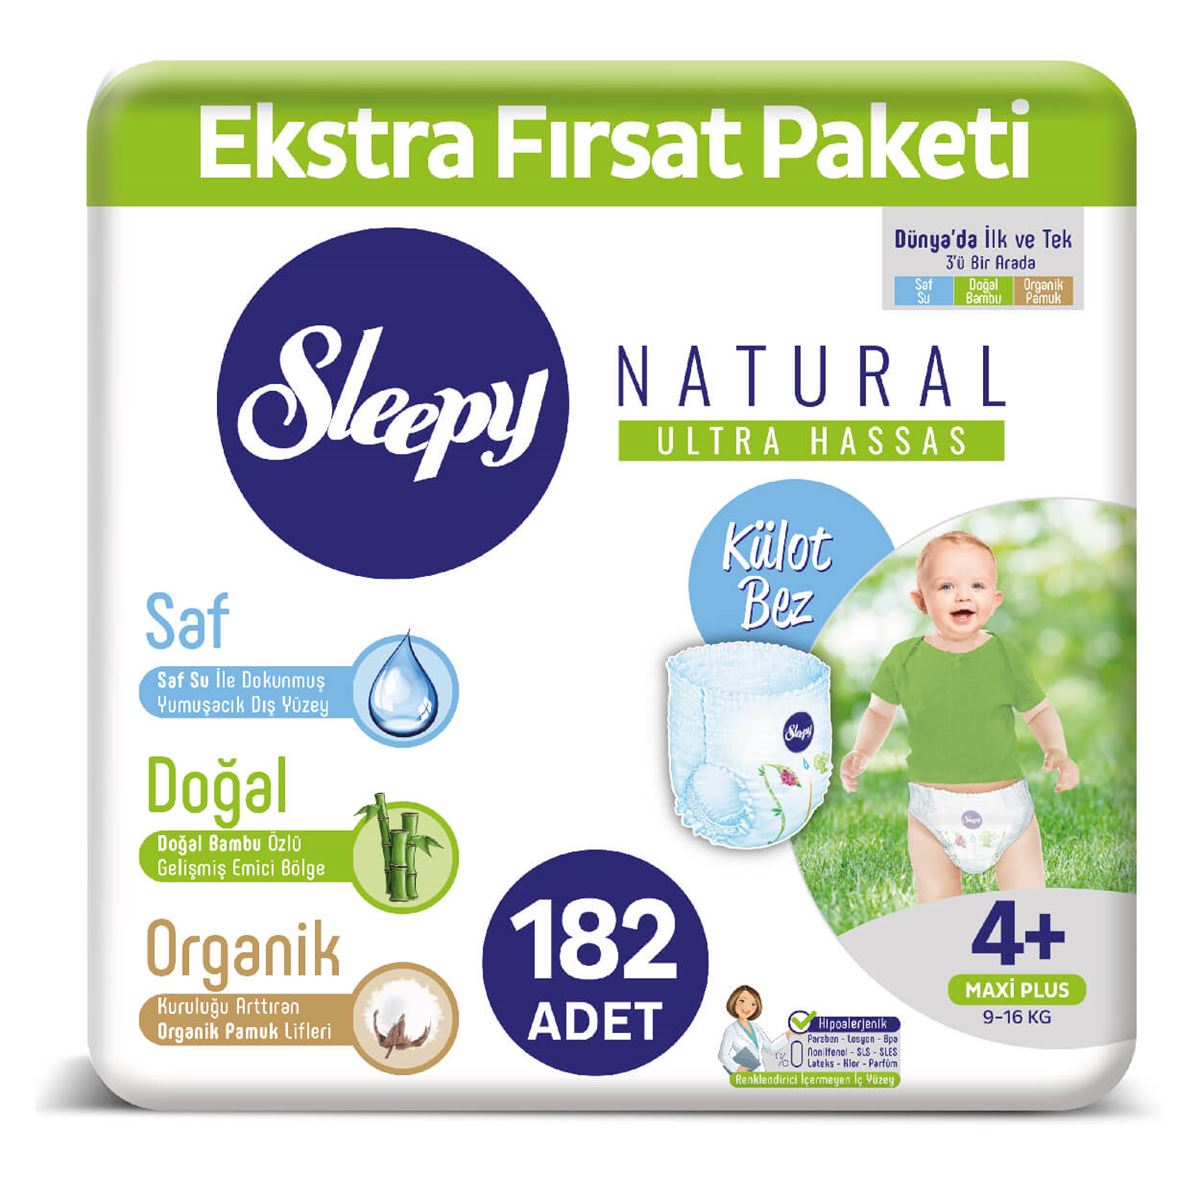 Sleepy Natural KÜLOT Bez 4+ Numara Maxi Plus Ekstra Fırsat Paketi 182 Adet